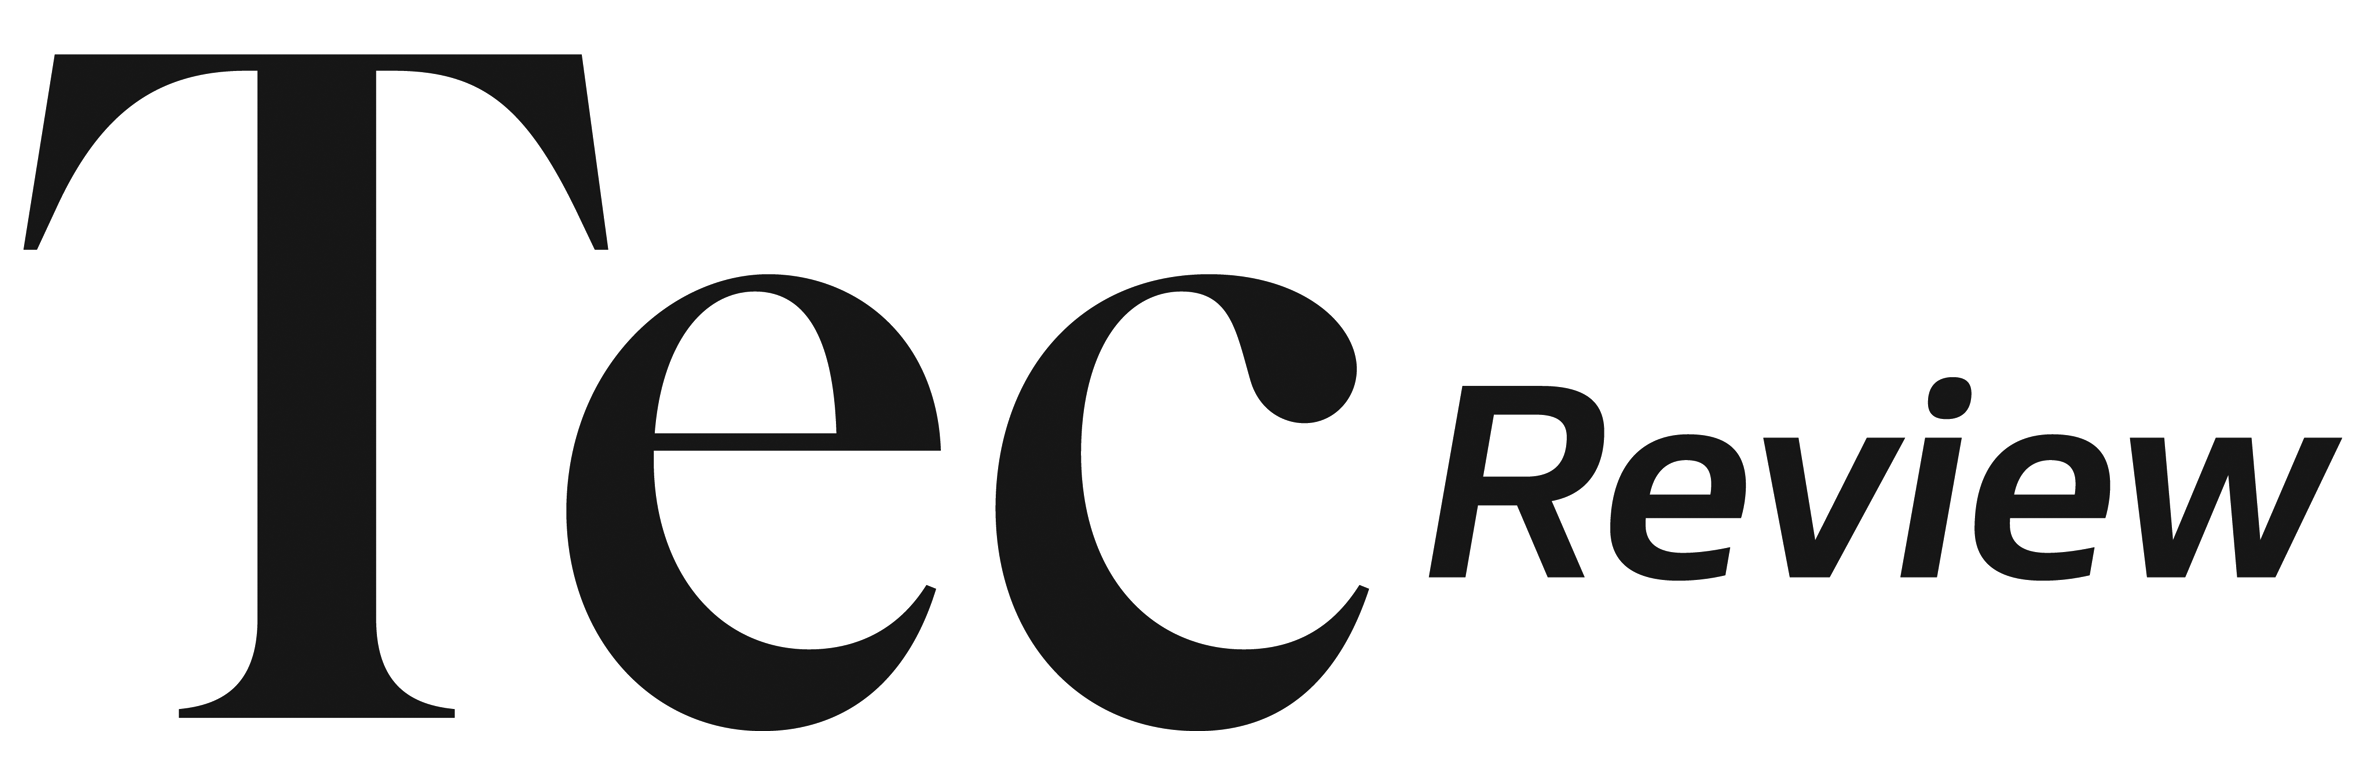 logo_techreview